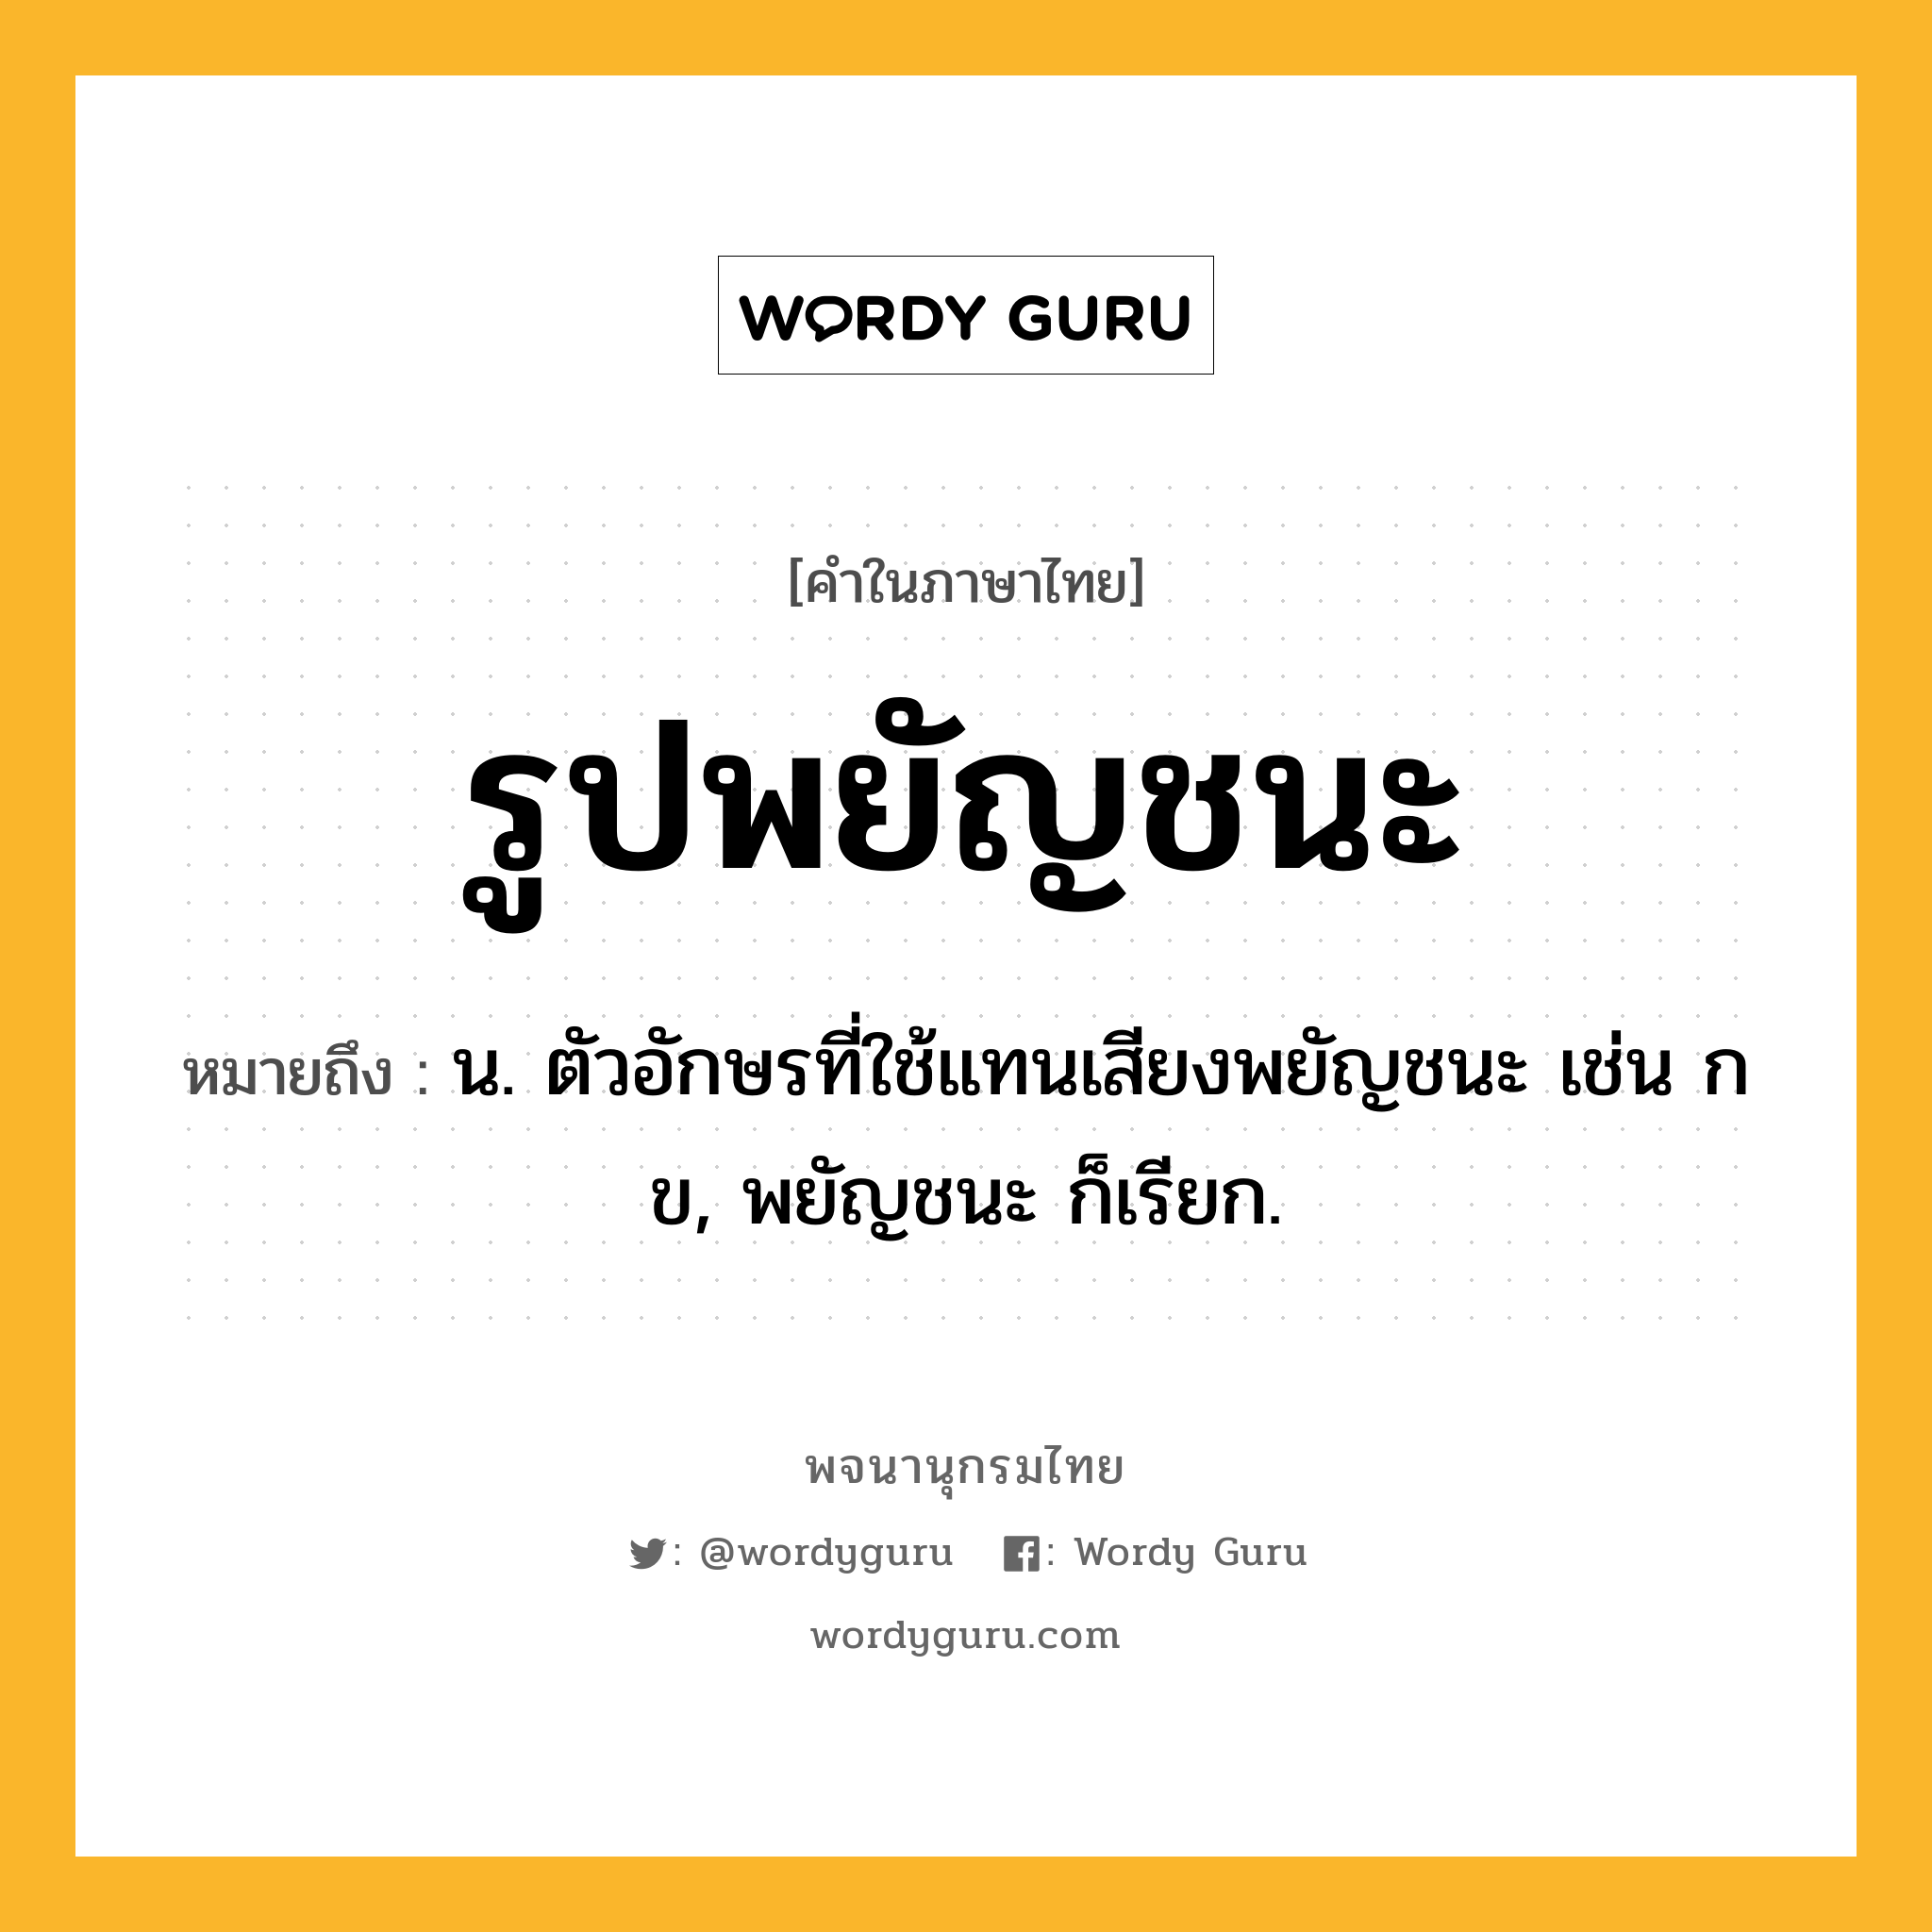 รูปพยัญชนะ ความหมาย หมายถึงอะไร?, คำในภาษาไทย รูปพยัญชนะ หมายถึง น. ตัวอักษรที่ใช้แทนเสียงพยัญชนะ เช่น ก ข, พยัญชนะ ก็เรียก.